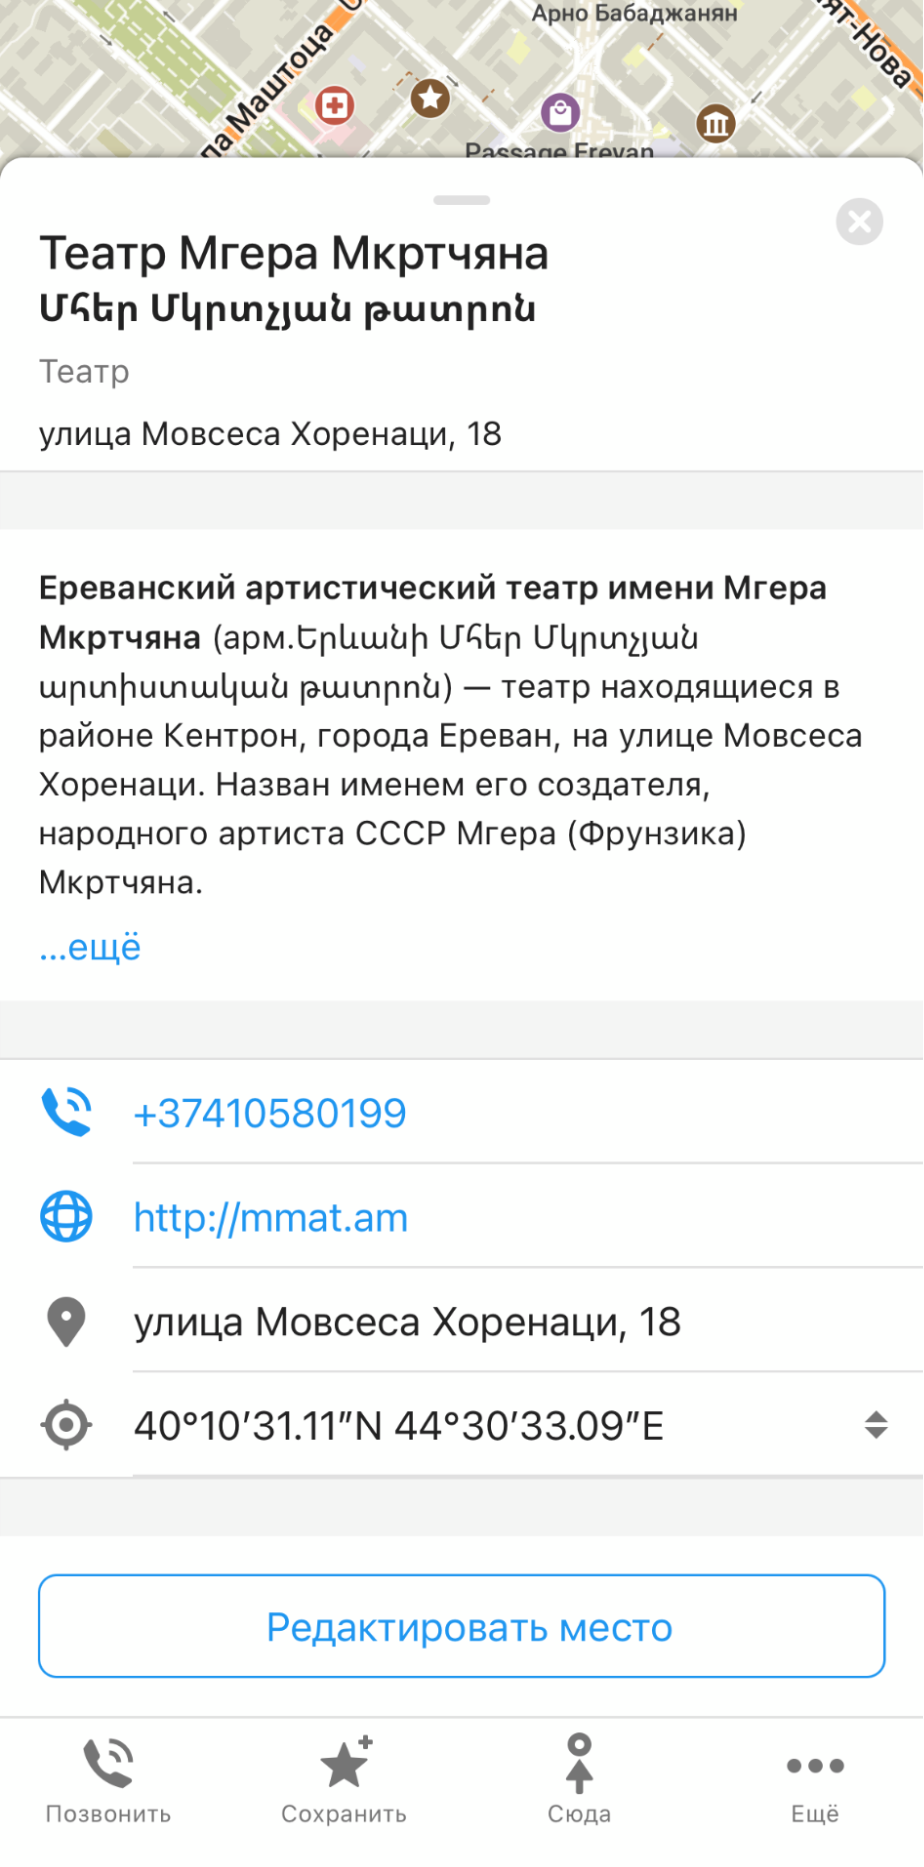 Приложение быстро работает и поддерживает русский язык. Я пользовался им во время поездки в Ереван, чтобы добраться из центра города в отель